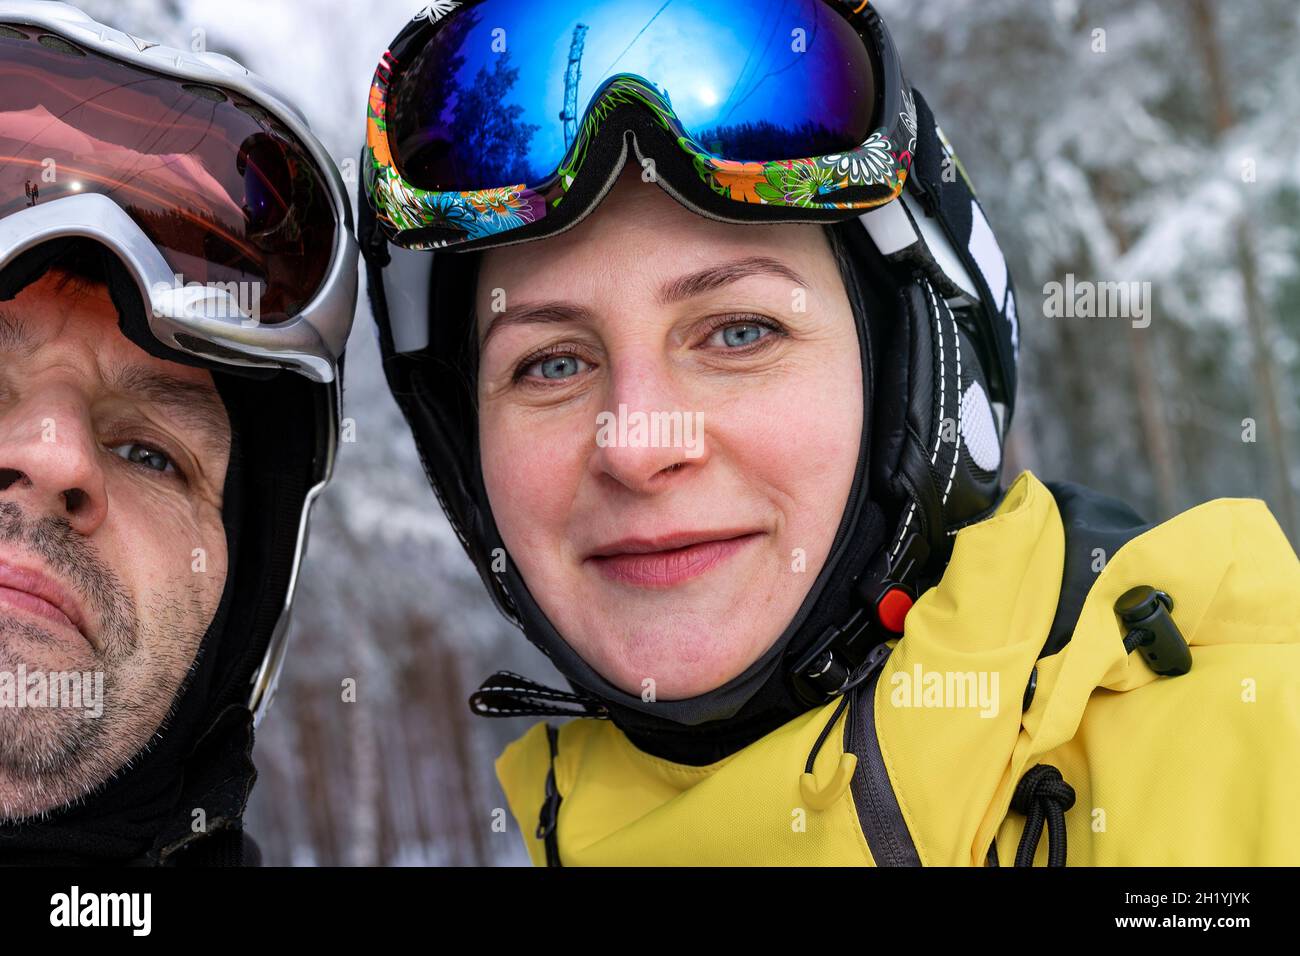 Un homme heureux et une femme d'origine caucasienne dans les casques et les lunettes de ski prennent un selfie.Mode de vie actif et sports d'hiver extrêmes.Hiver Banque D'Images